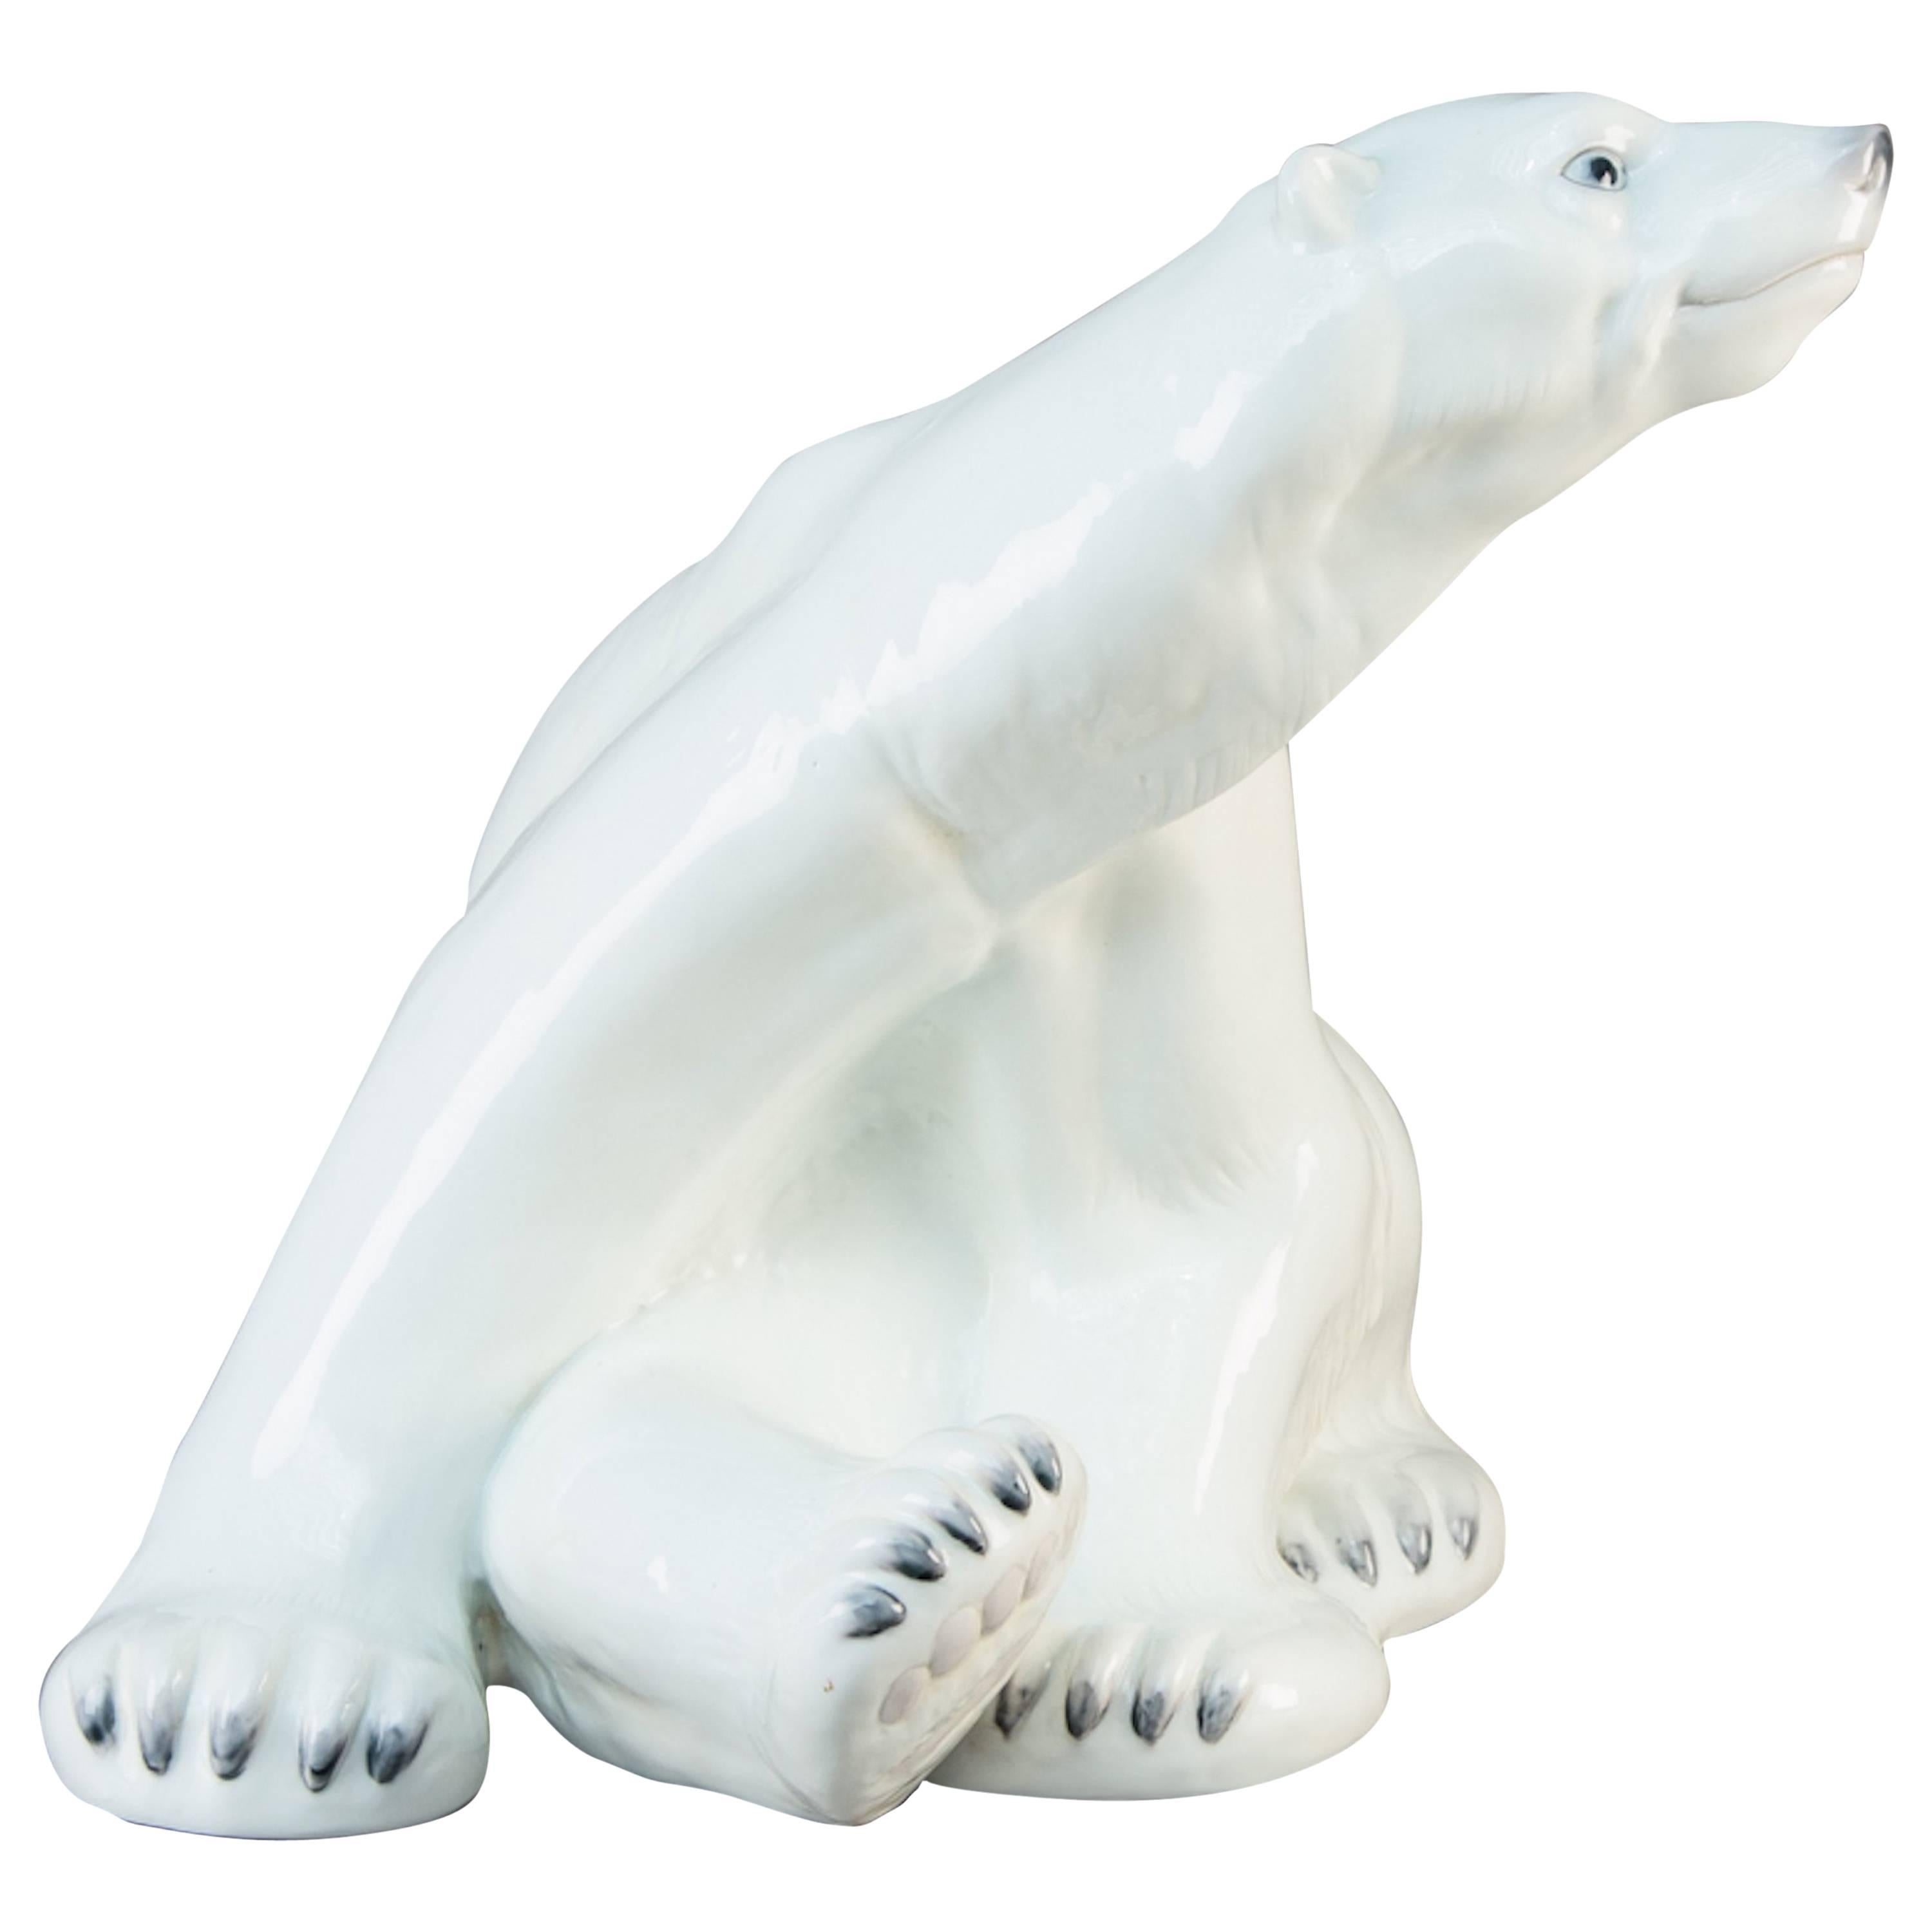 Rare & Huge Porcelain Polar Bear by Niels Nielsen, Bing & Grondahl Denmark 1970s